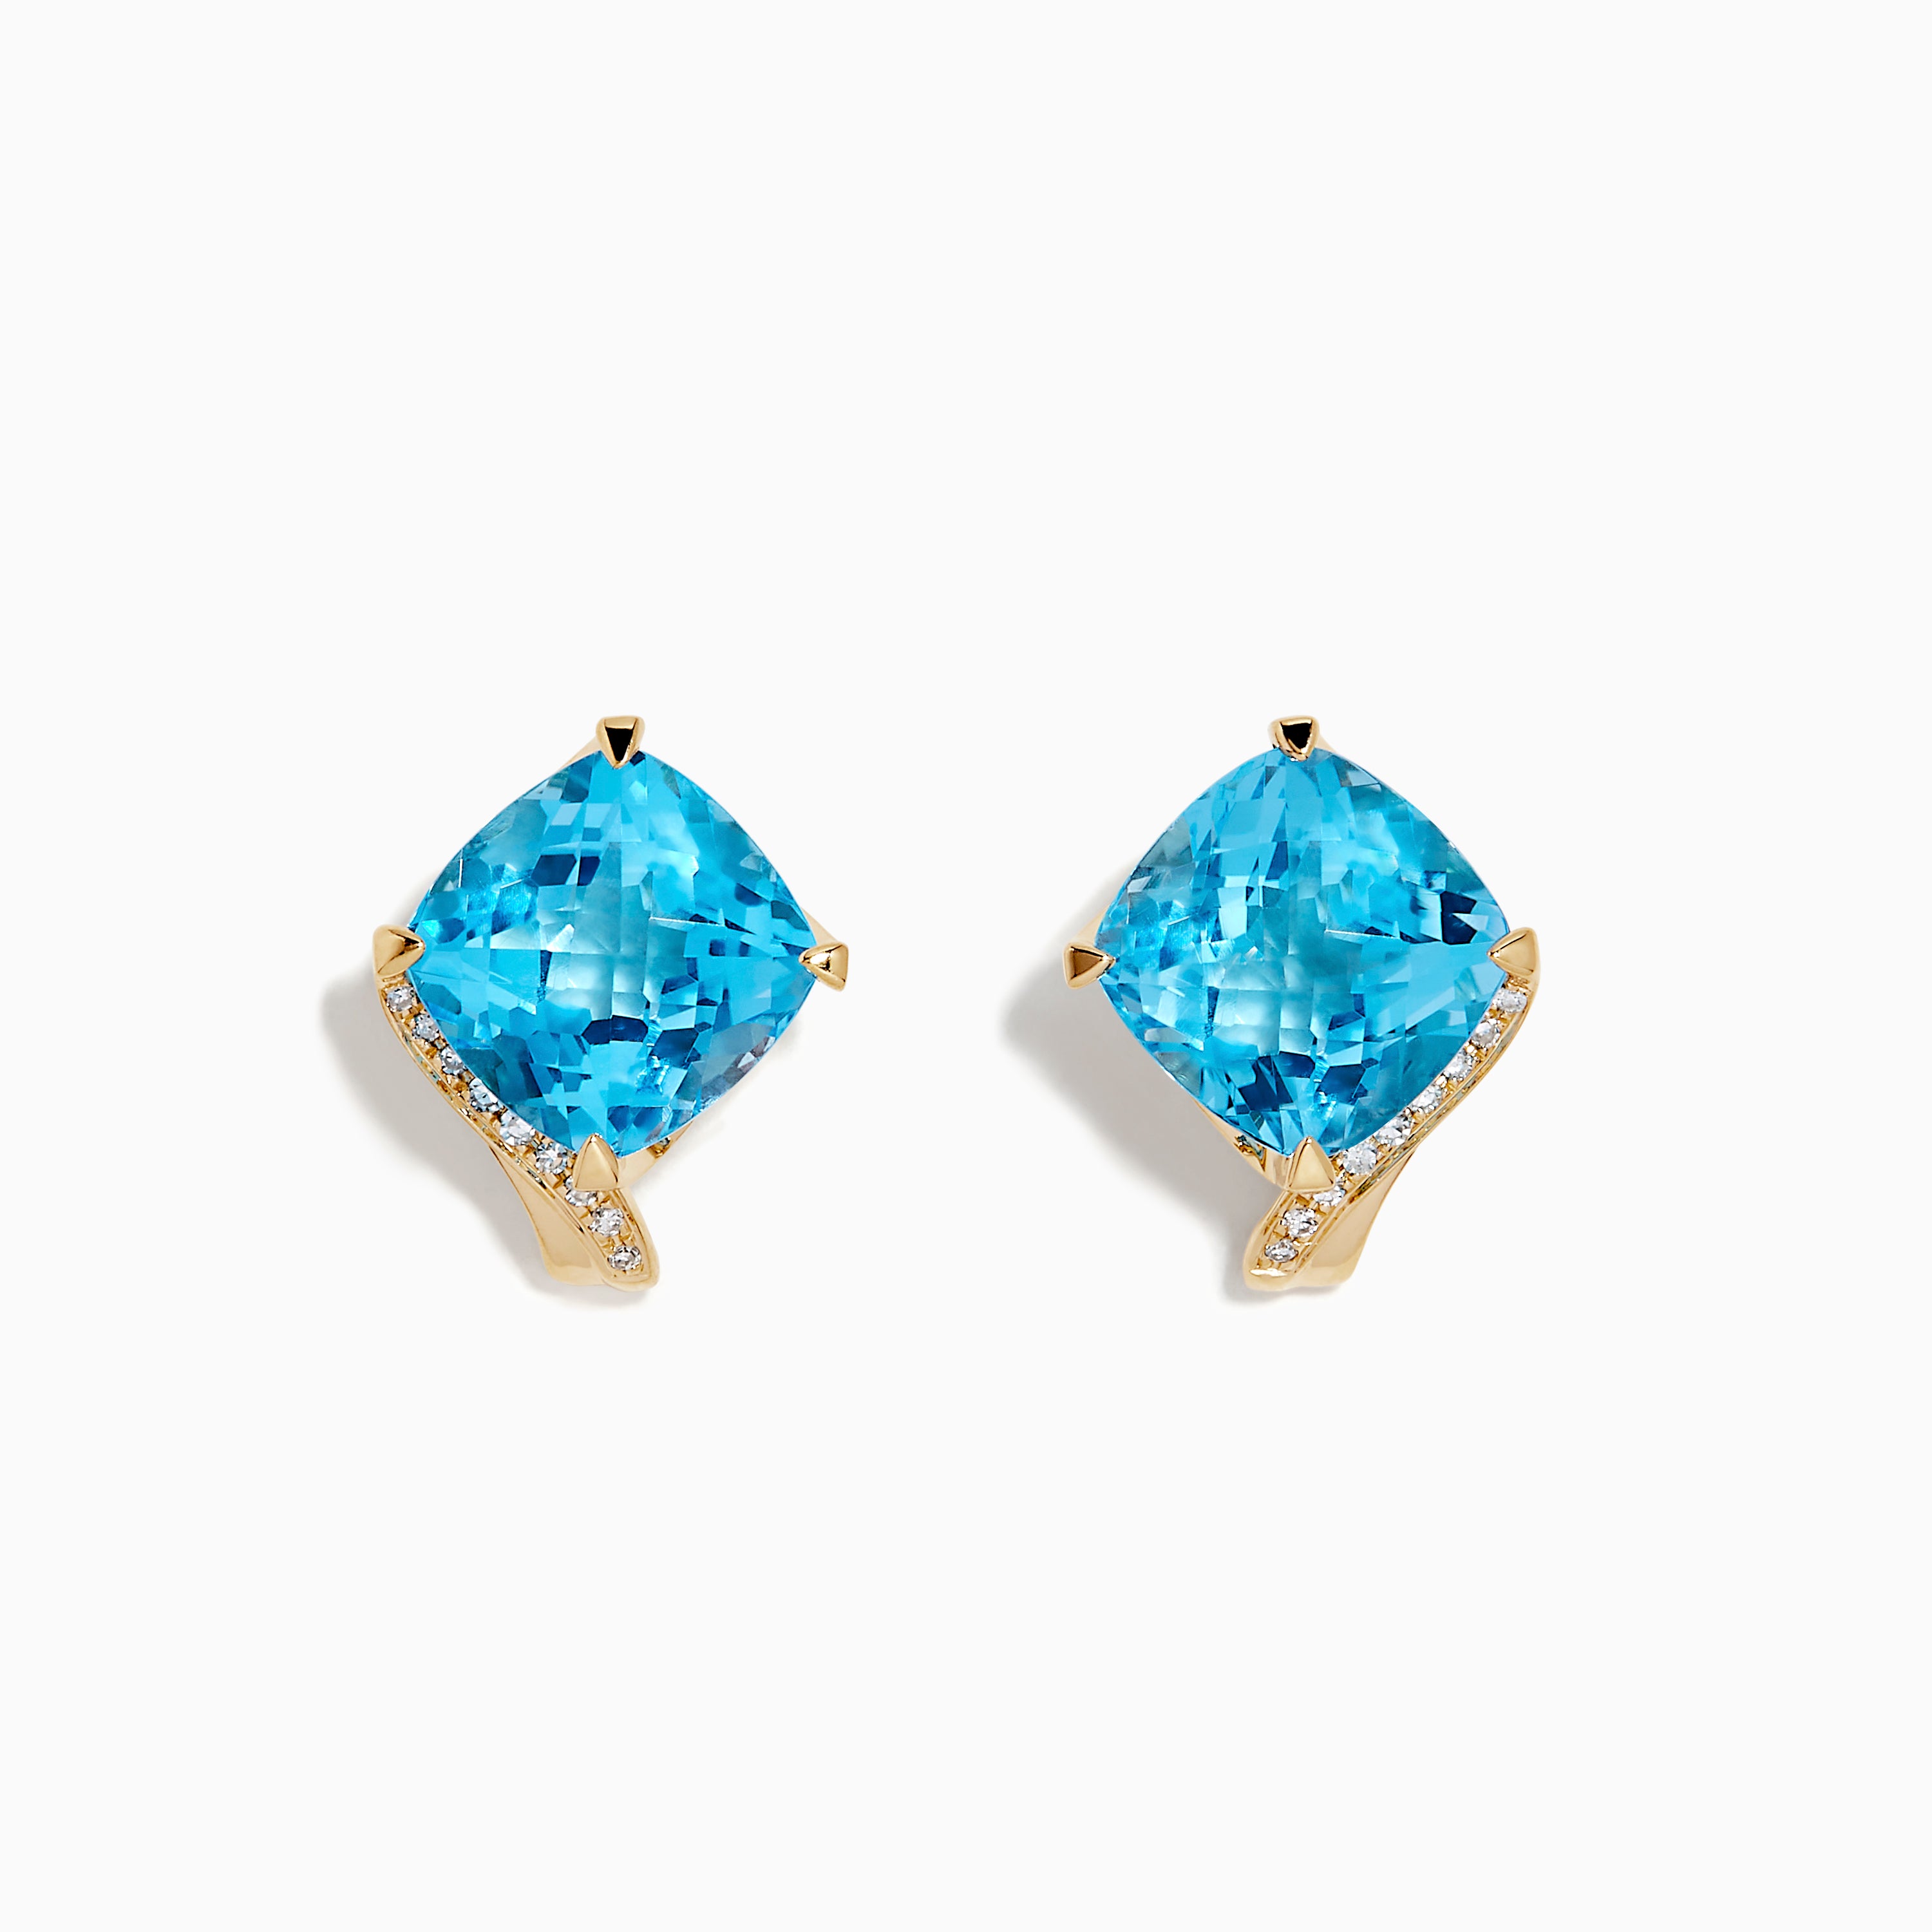 Effy Ocean Bleu 14K Yelolw Gold Blue Topaz and Diamond Stud Earrings